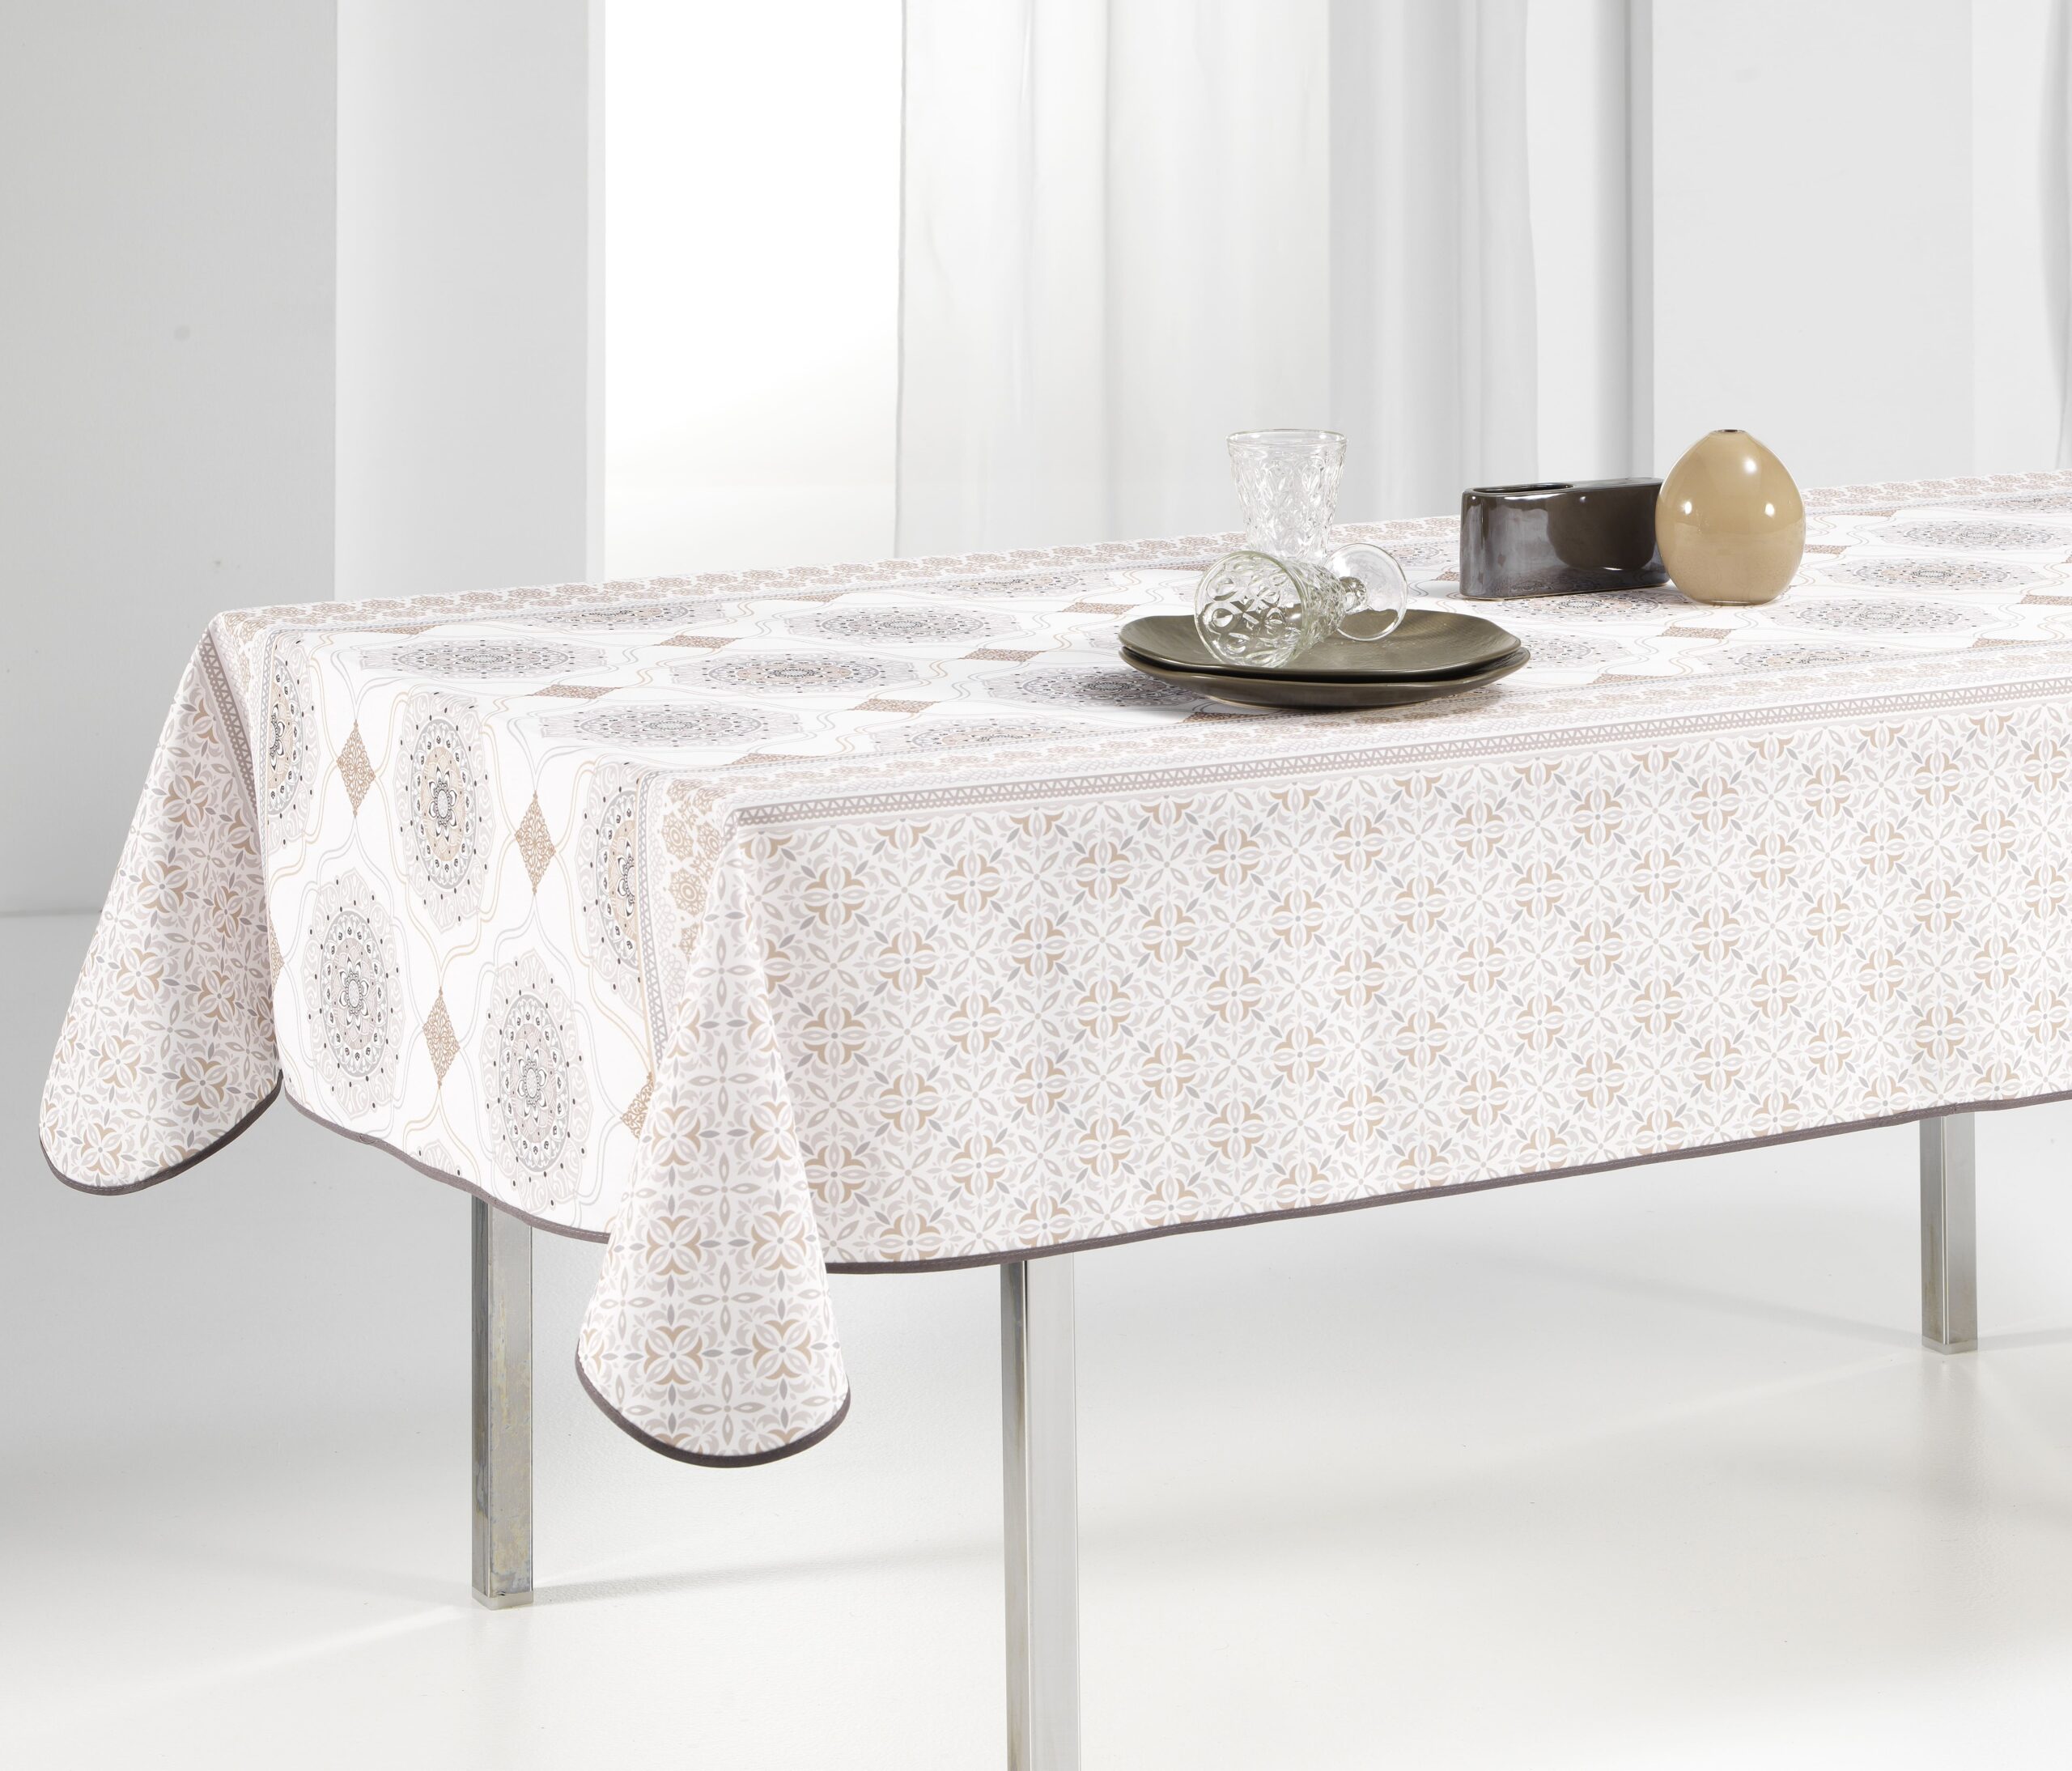 Brand Umi Nappe Rectangulaire Anti Tache Blanche Nappe Salle à Manger Intérieur Impermeable Decoration de la Table Blanc 140x220cm 